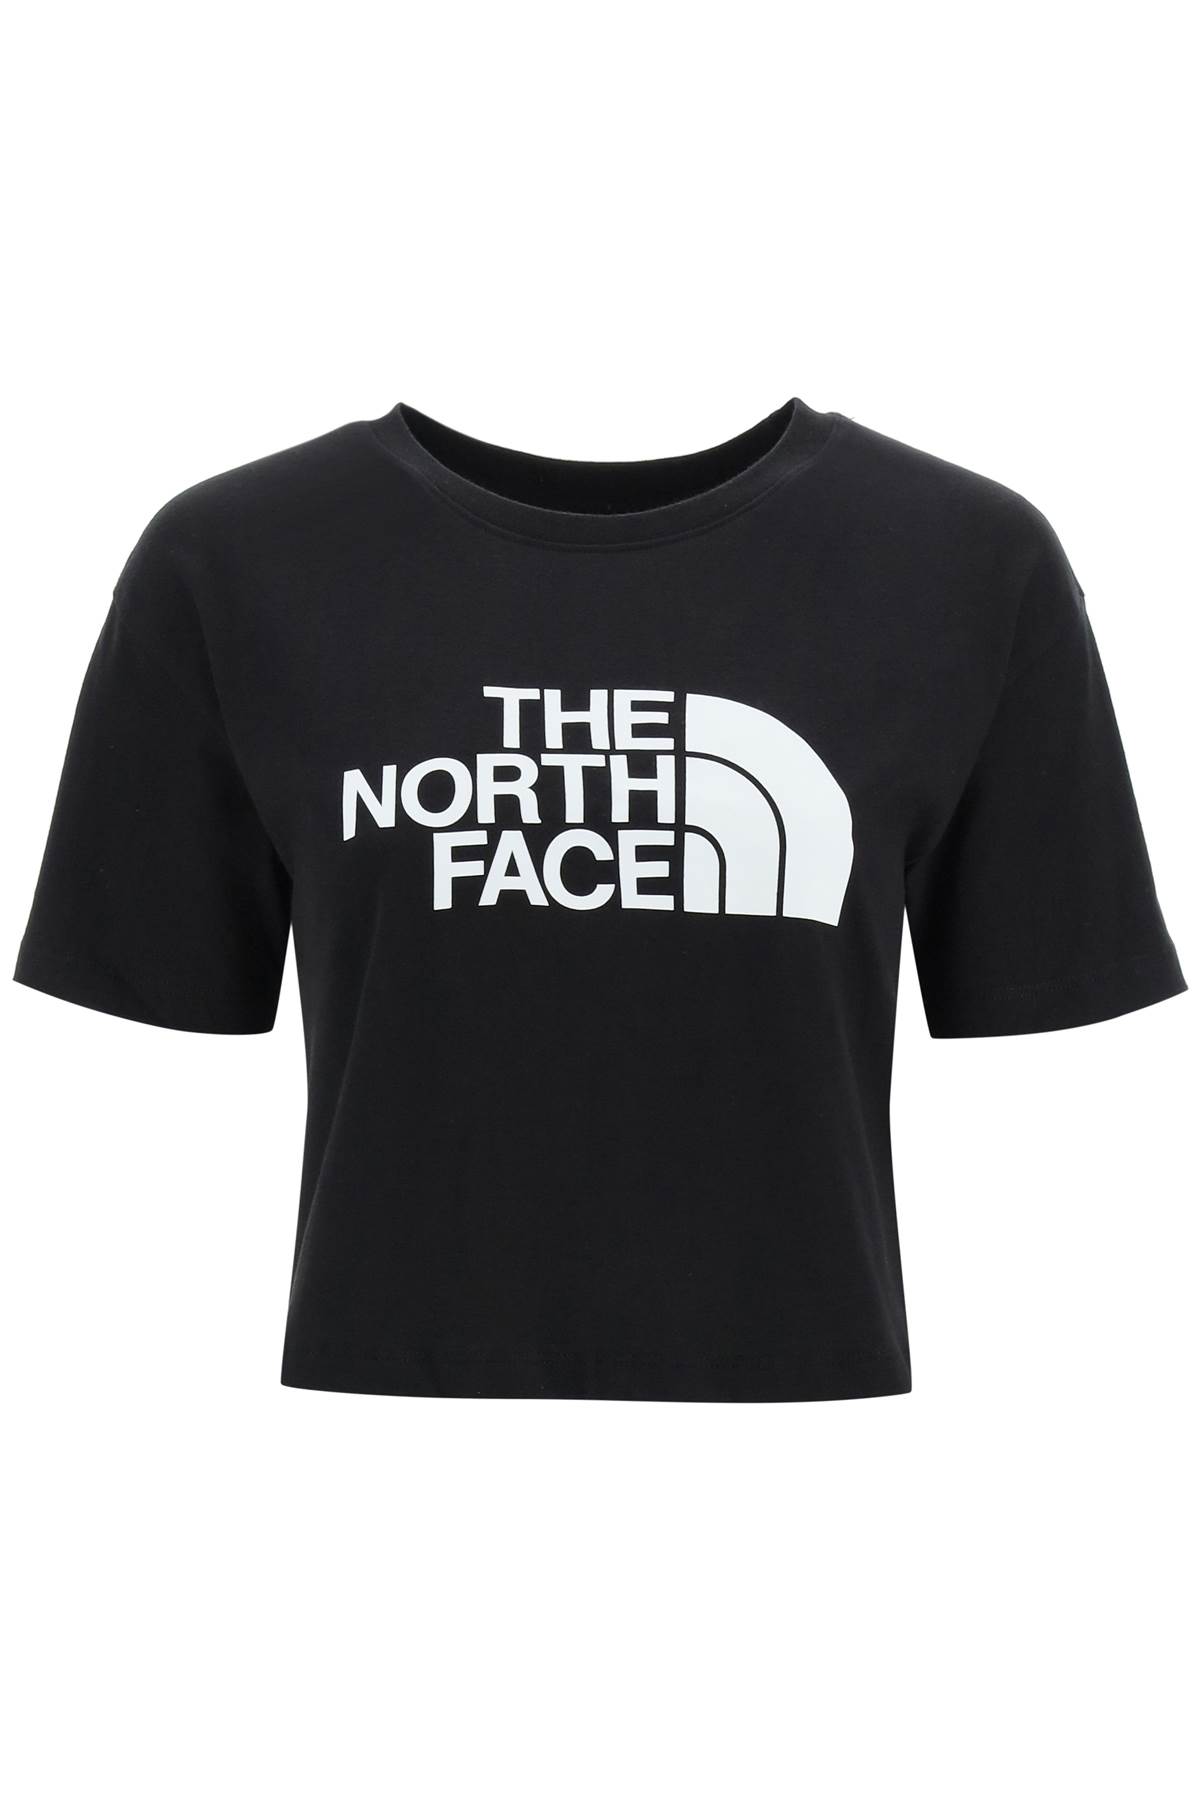 Zegenen bom ochtendgloren The North Face T-shirt Kids In Black | ModeSens